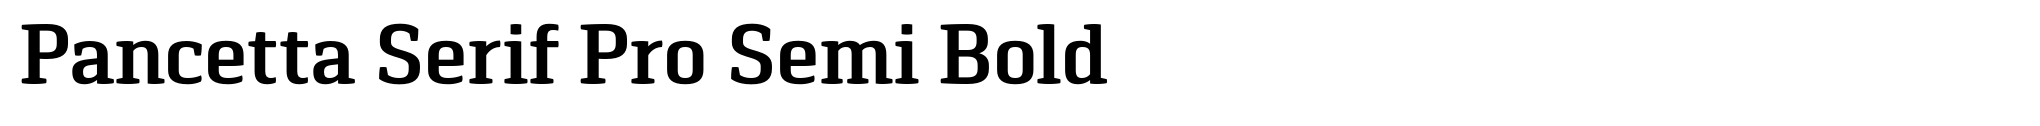 Pancetta Serif Pro Semi Bold image